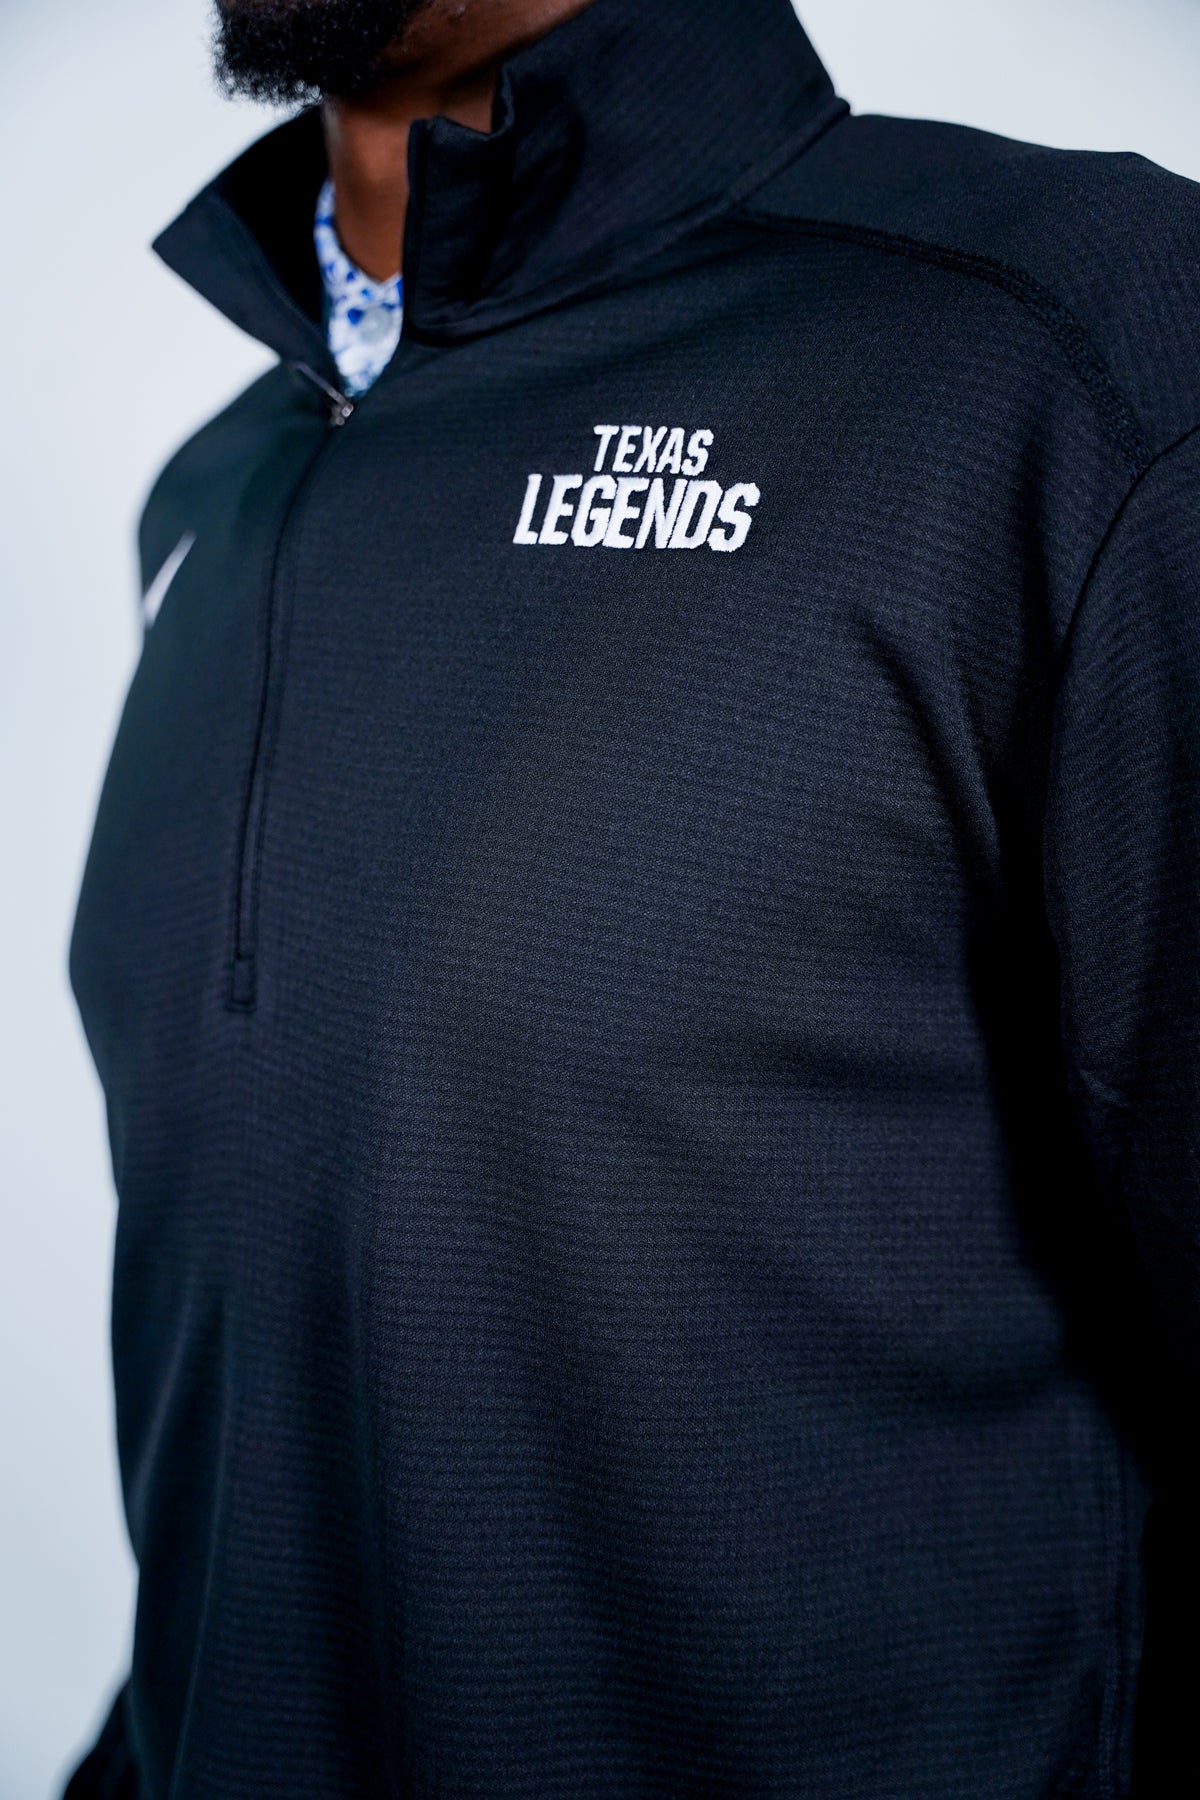 1/4 Zip Texas Legends Wordmark Nike Jacket